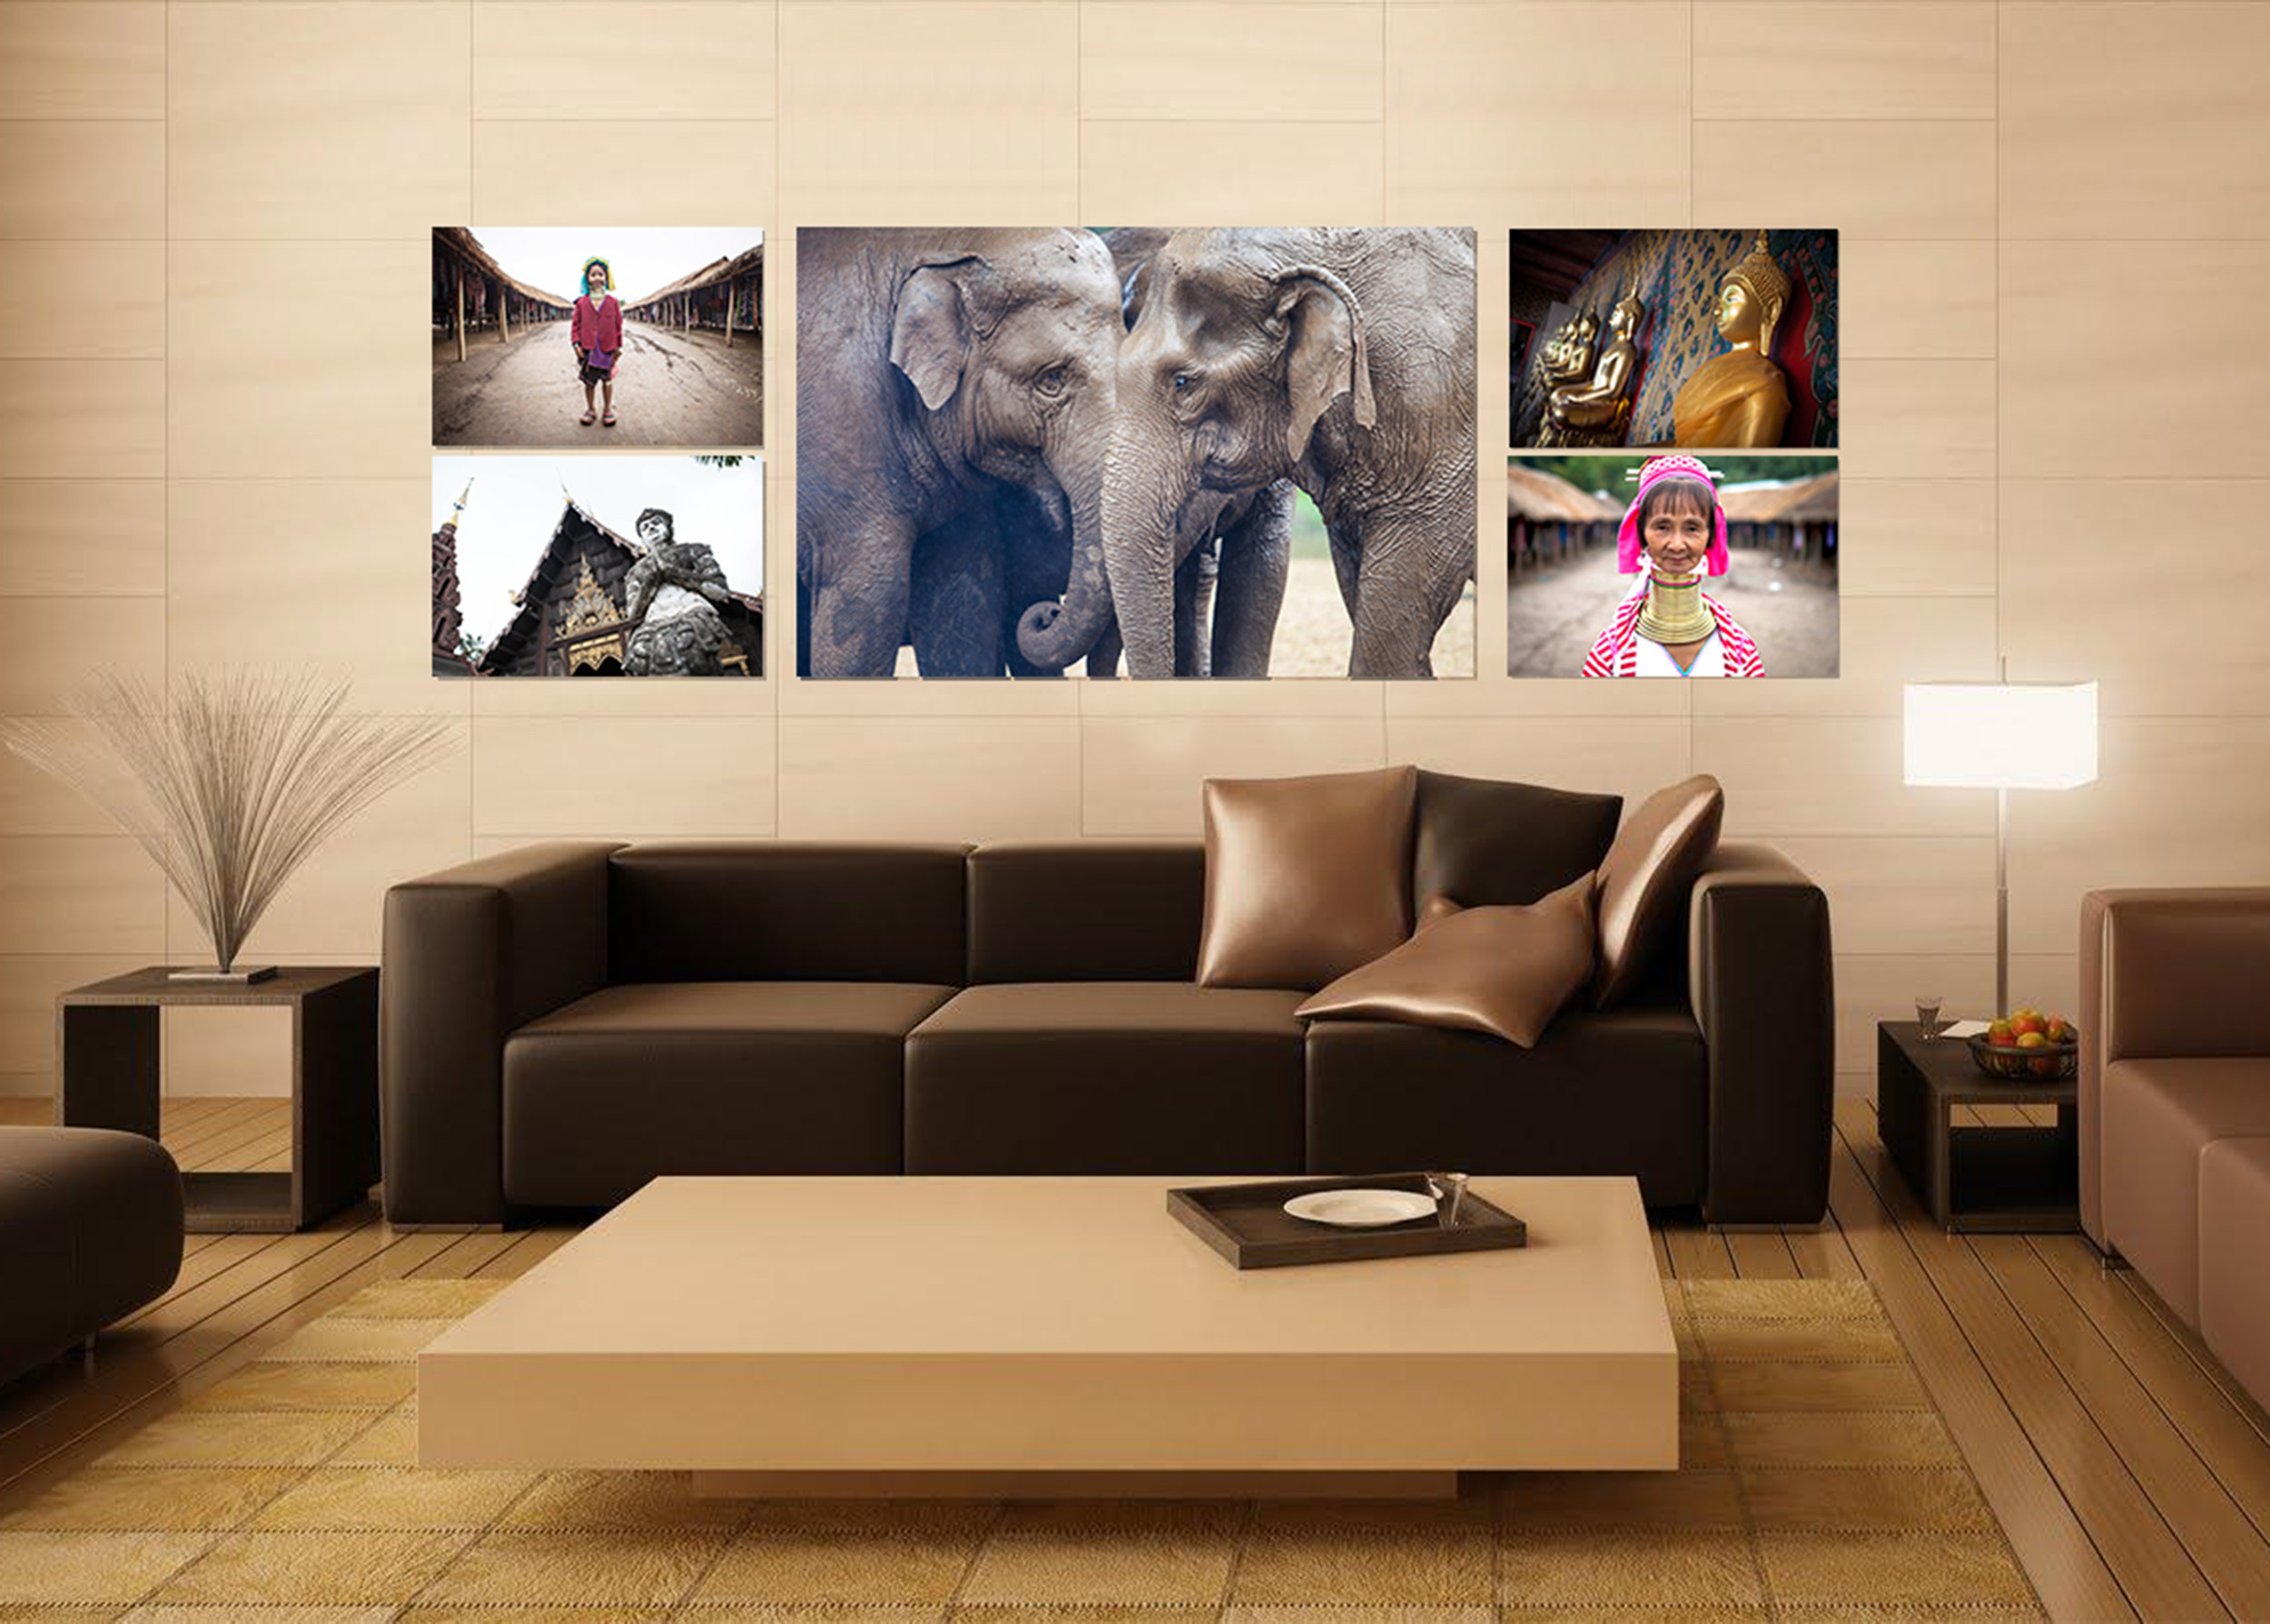 RE_ThailandGroup_livingroom.jpg